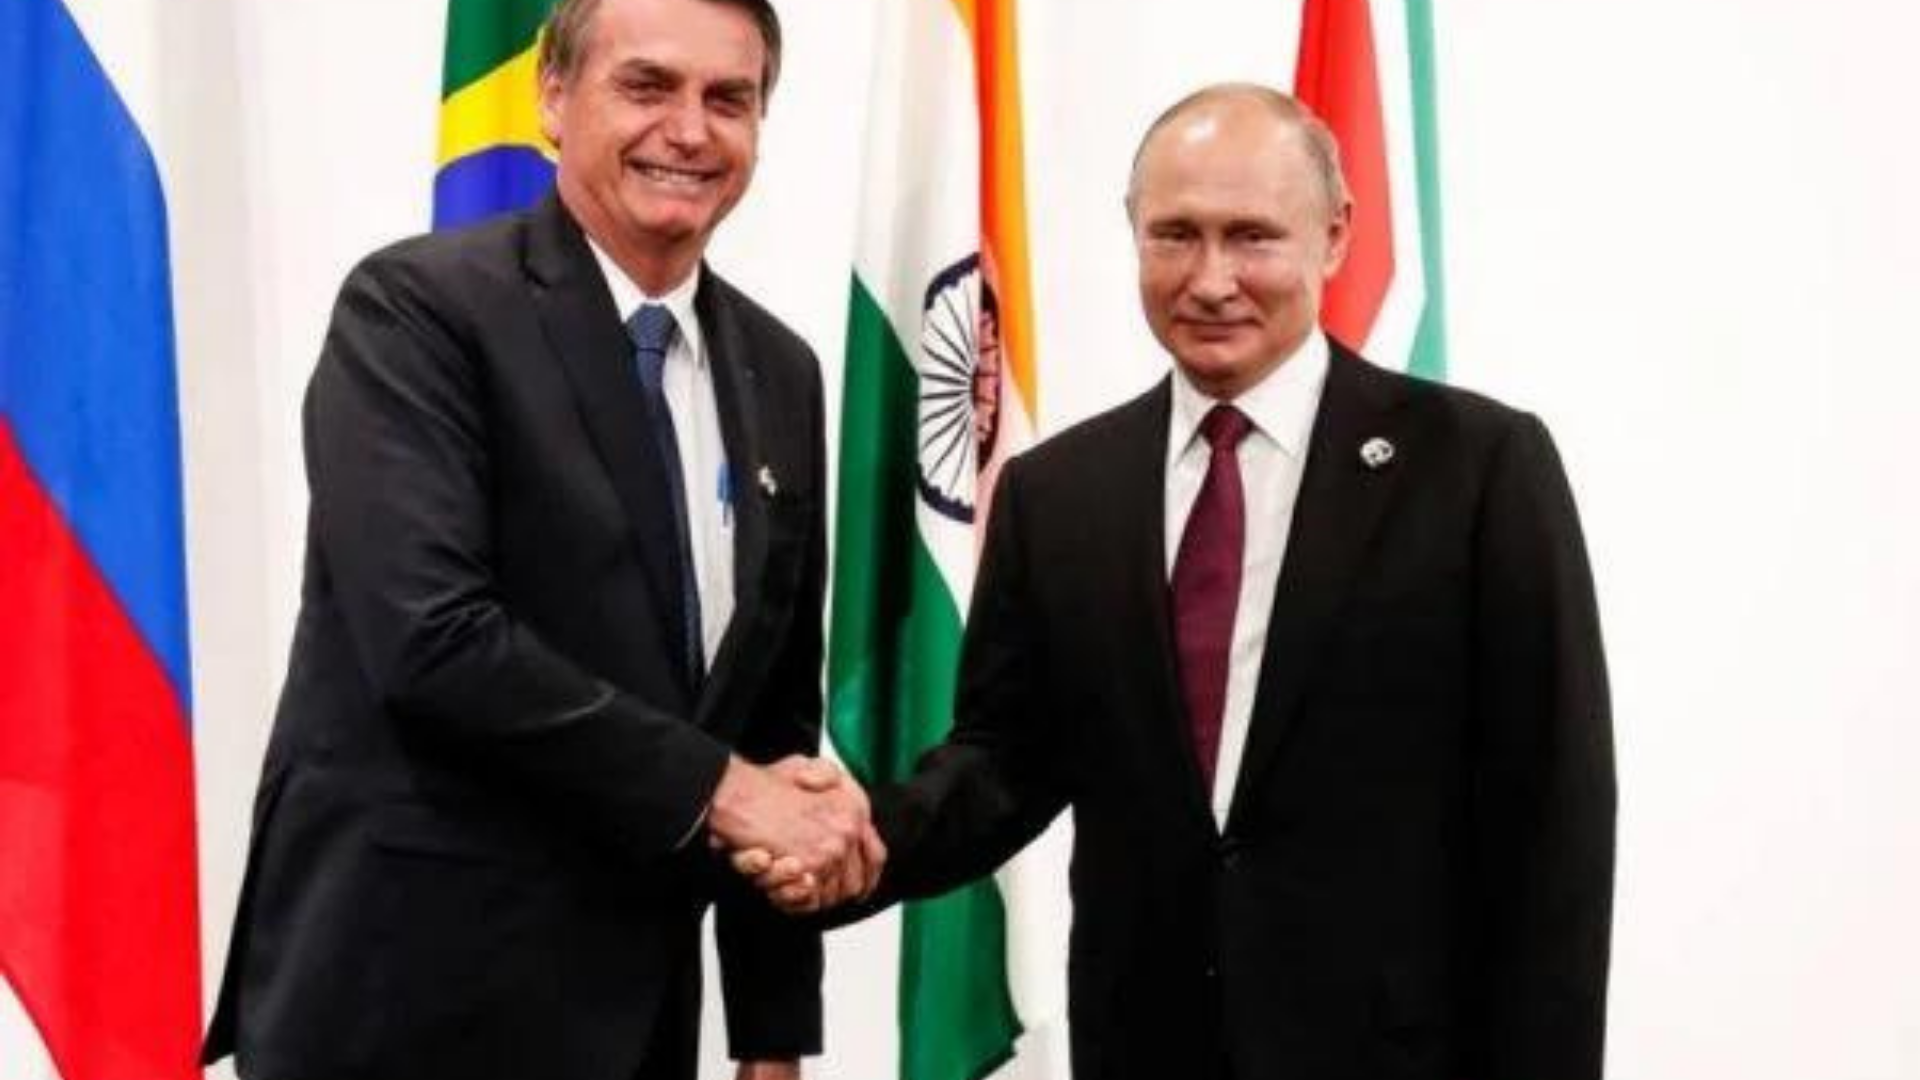 Bolsonaro irrita EUA em aproximação com rússia. Ele aperta a mão de Vladimir Putin, os dois usam ternos pretos, Bolsonaro com gravata azul e Putin com gravata vermelha. Ao fundo, há algumas bandeiras, incluindo a do Brasil.